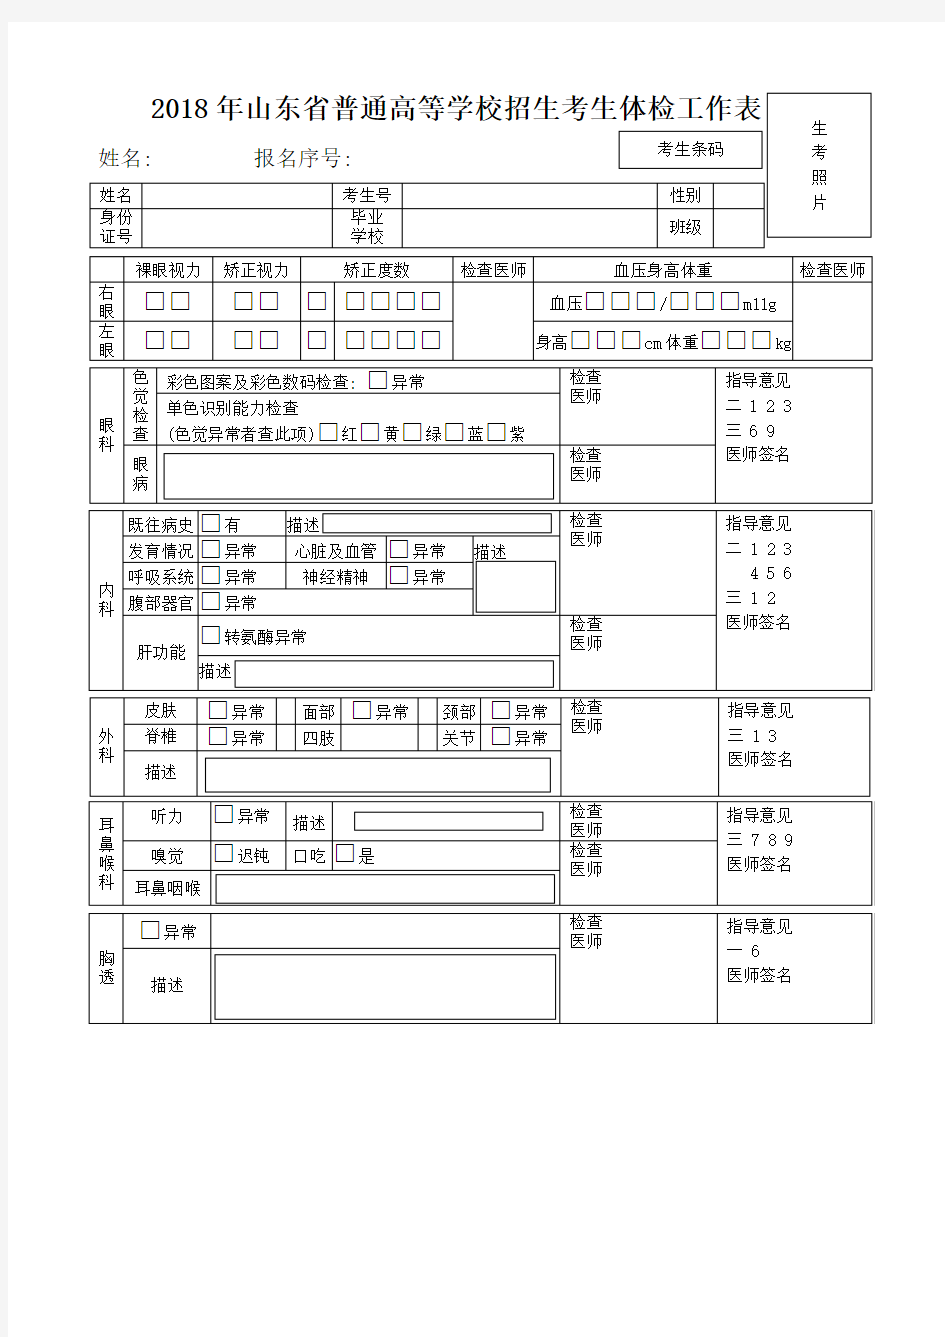 2018年山东省普通高等学校招生考生体检工作表